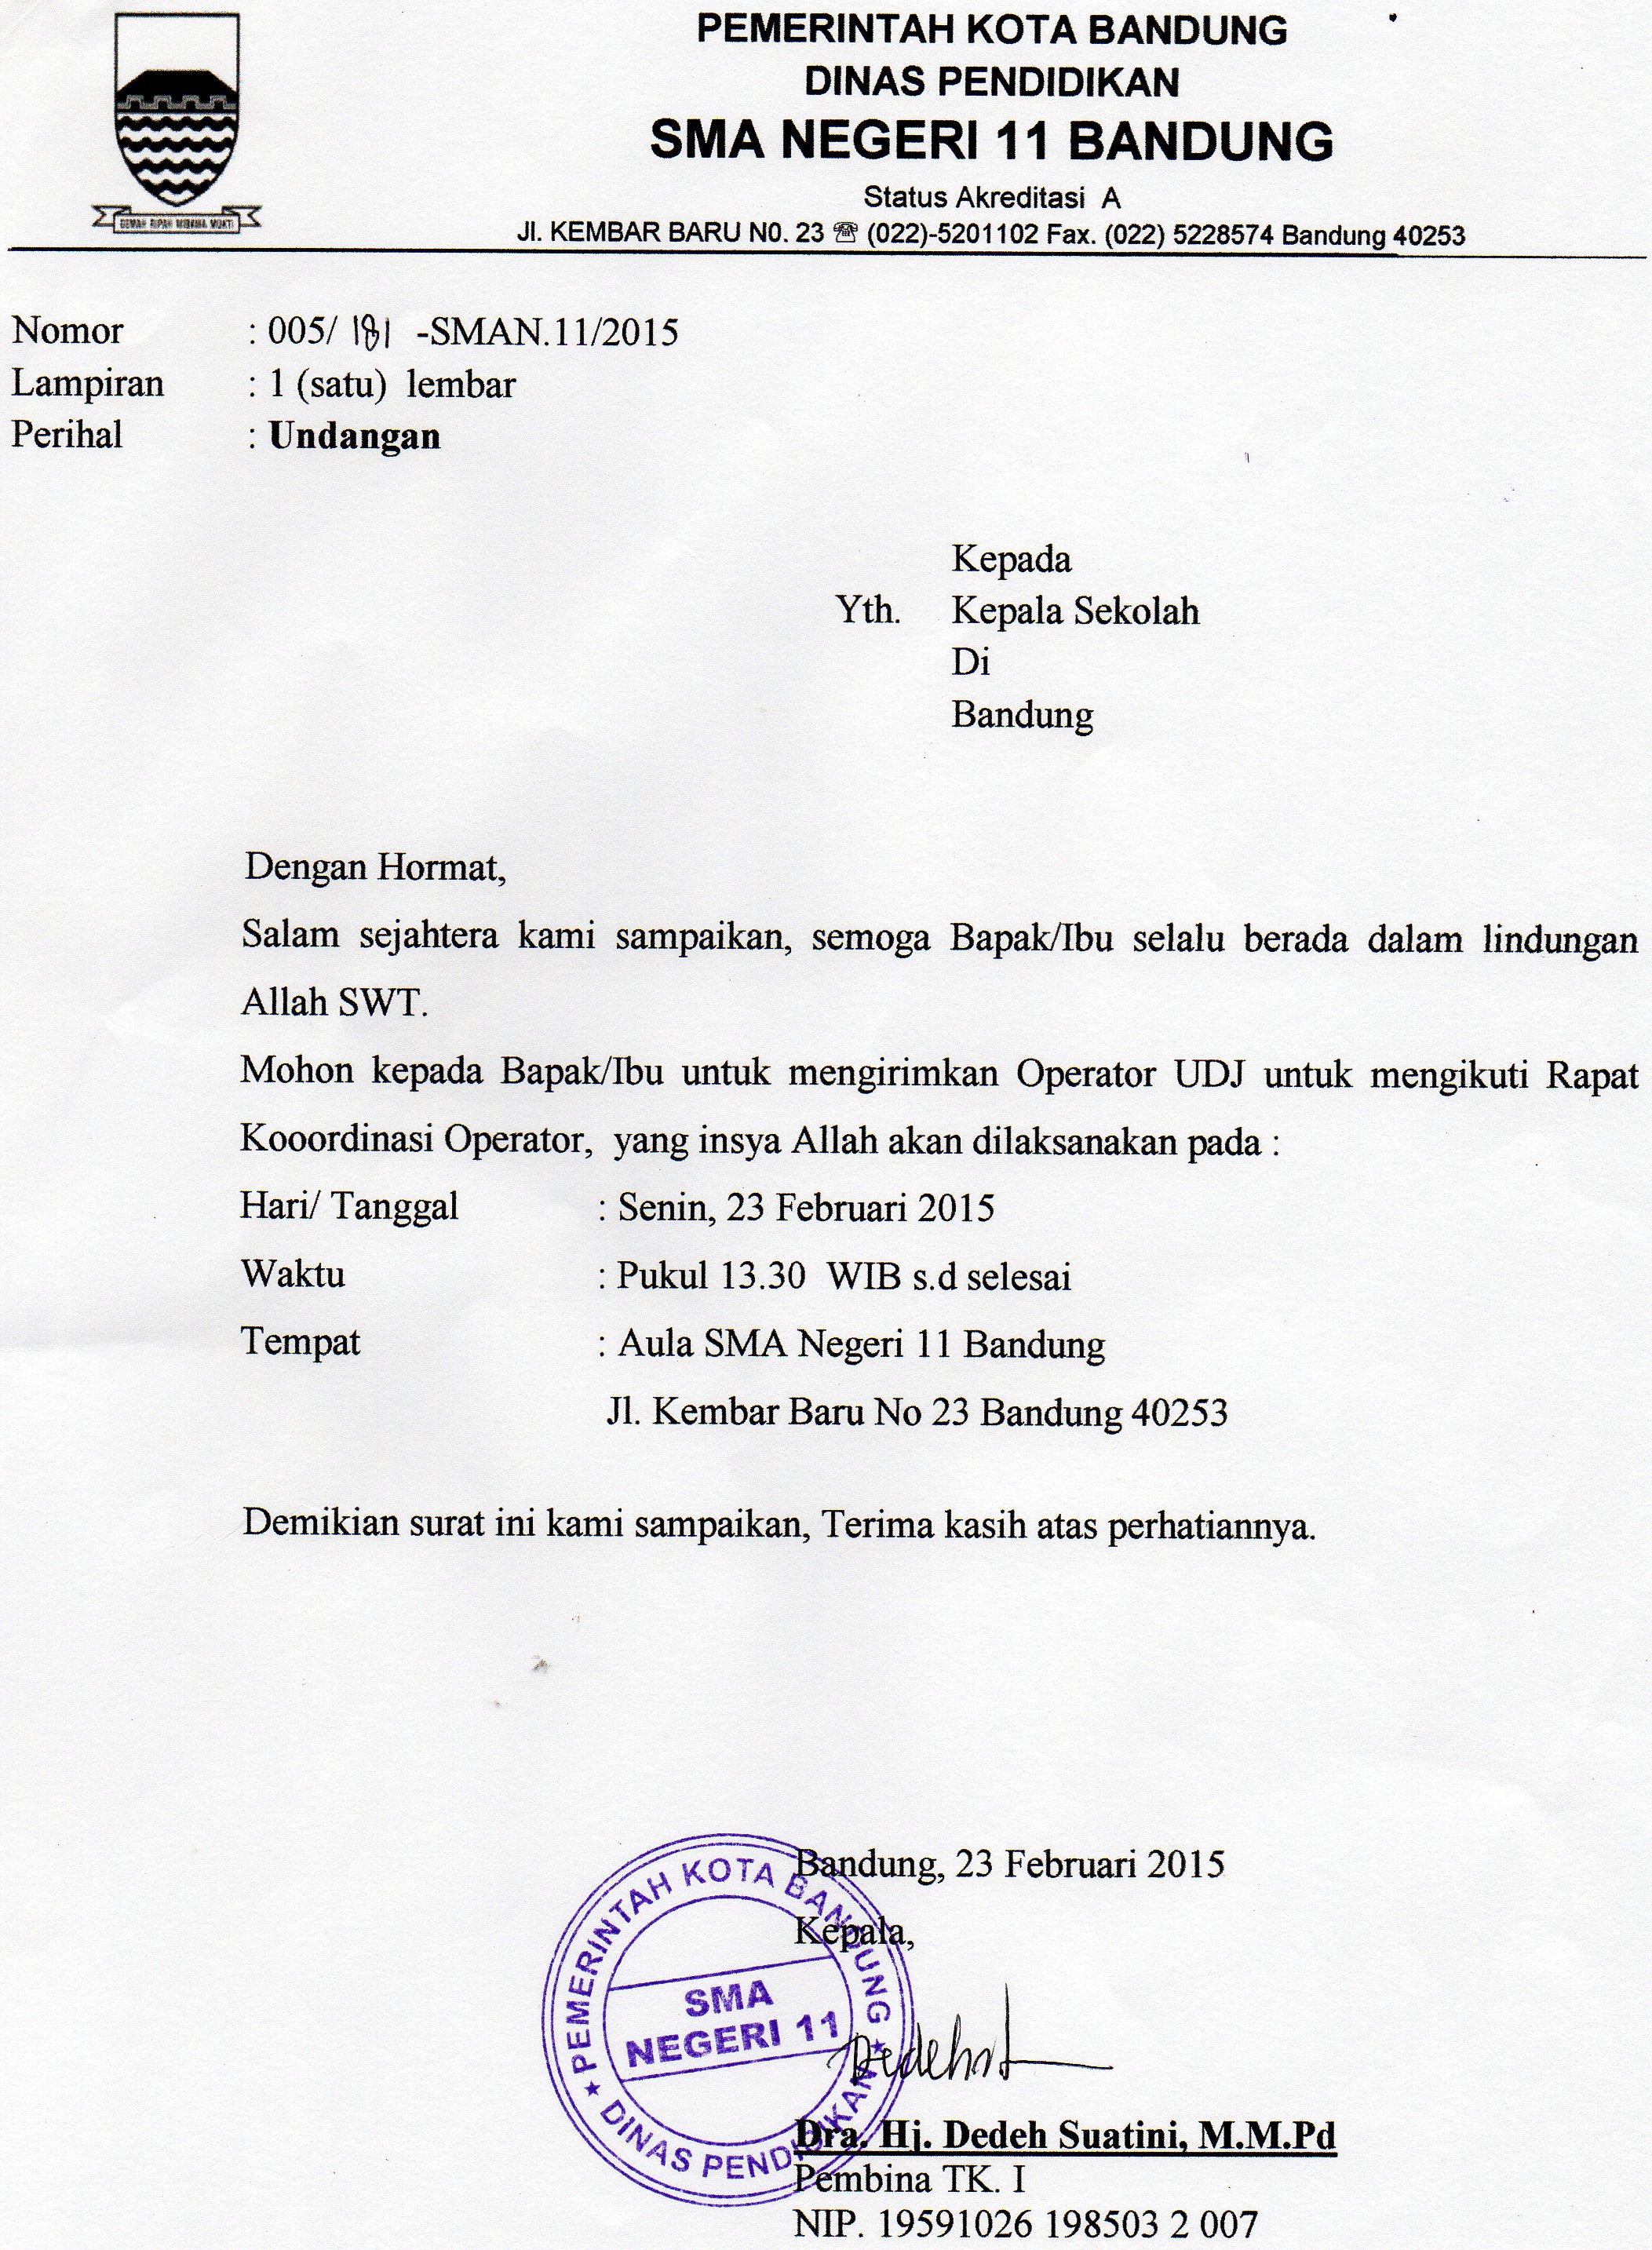 Surat Undangan Rapat Koordinasi Operator Sma Digital Kota Bandung